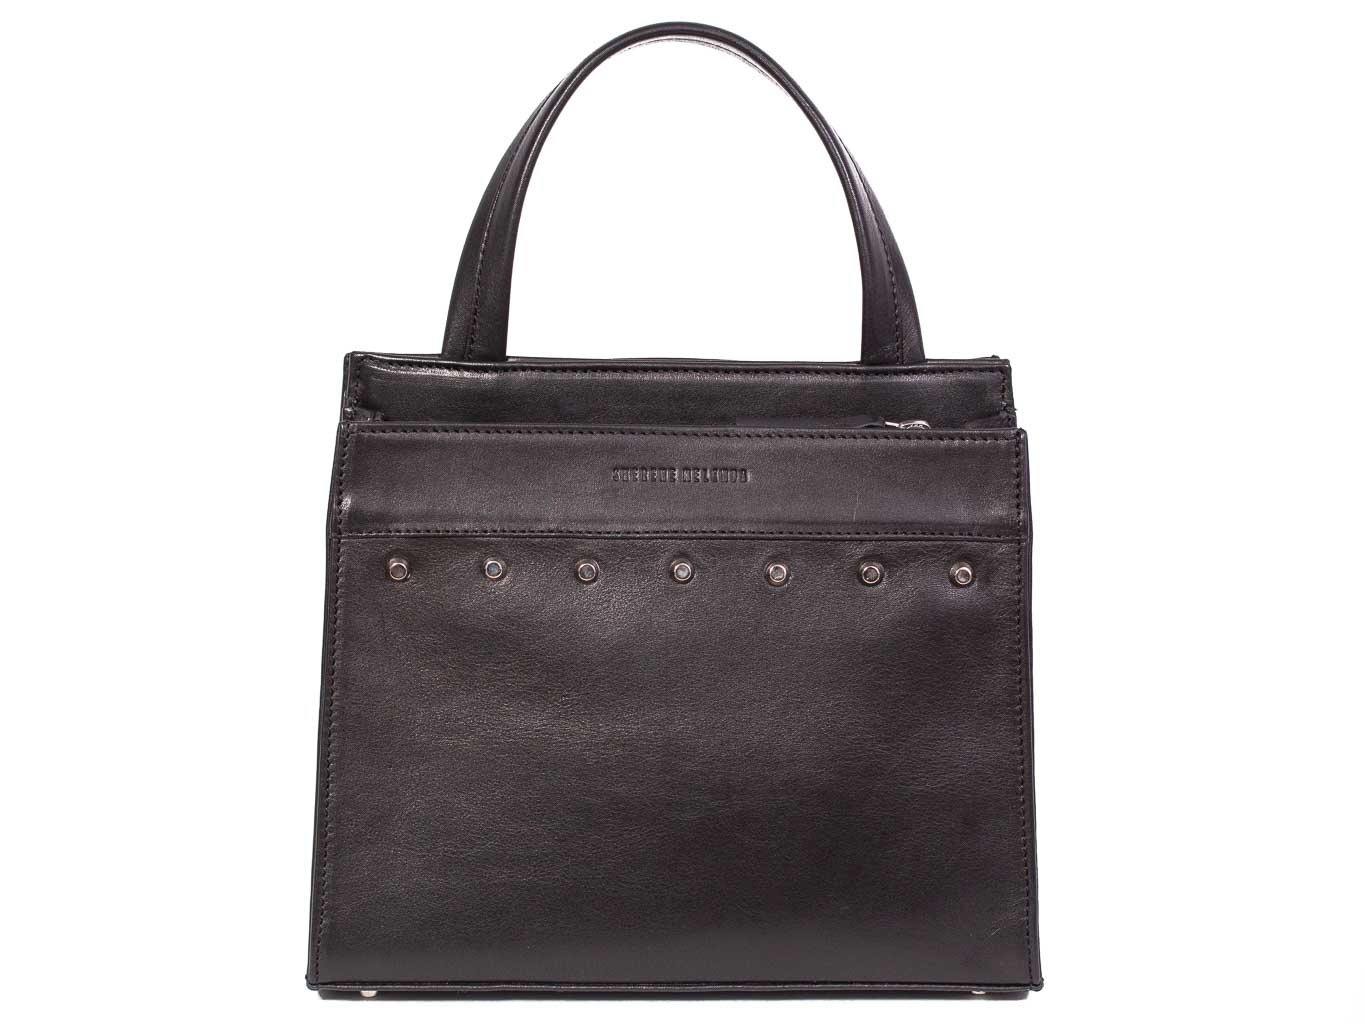 Top Handle Studded Handbag in Black by Sherene Melinda front